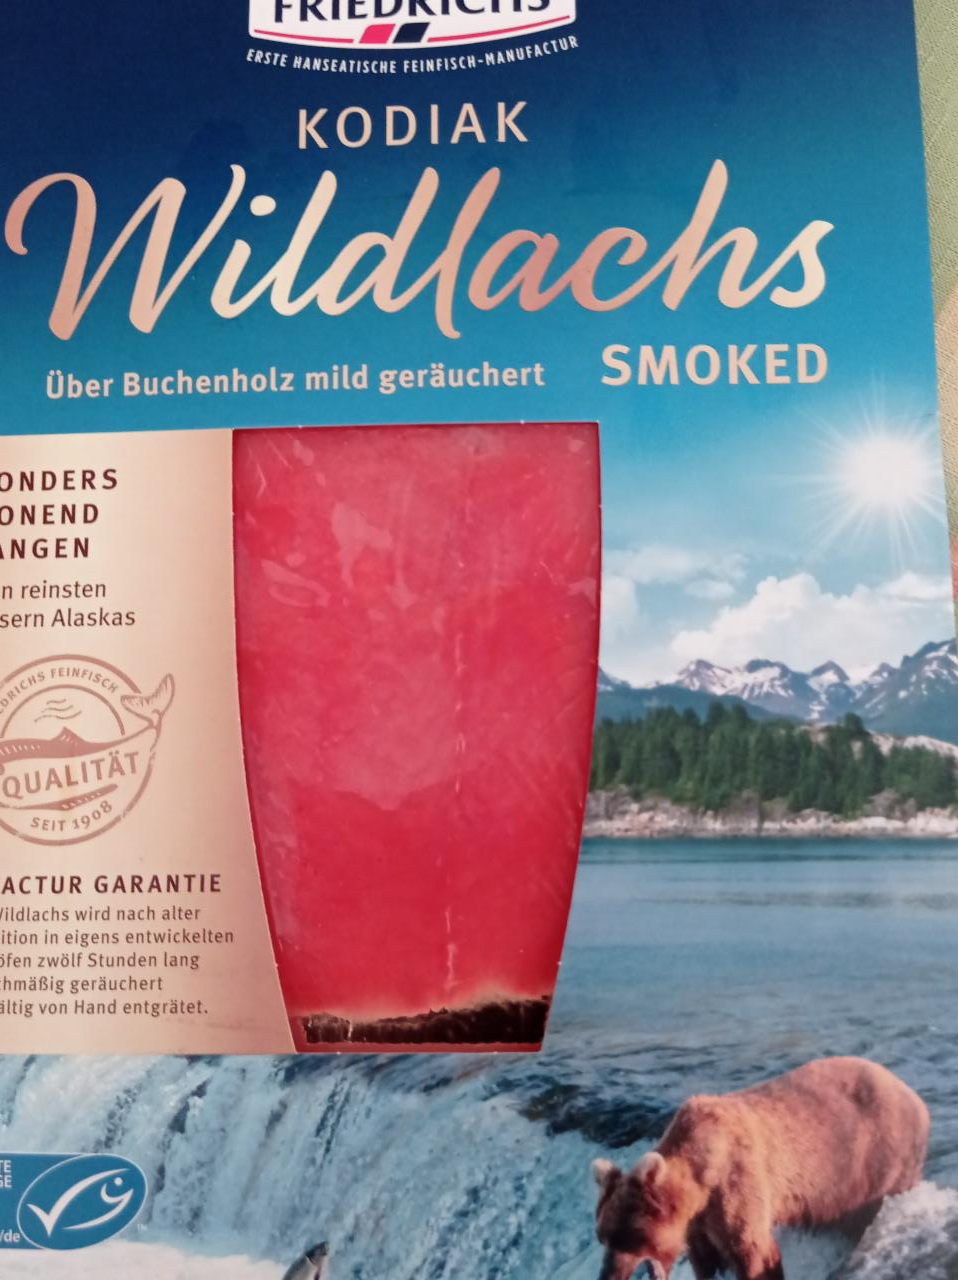 Fotografie - Kodiak Wildlachs smoked Friedrichs